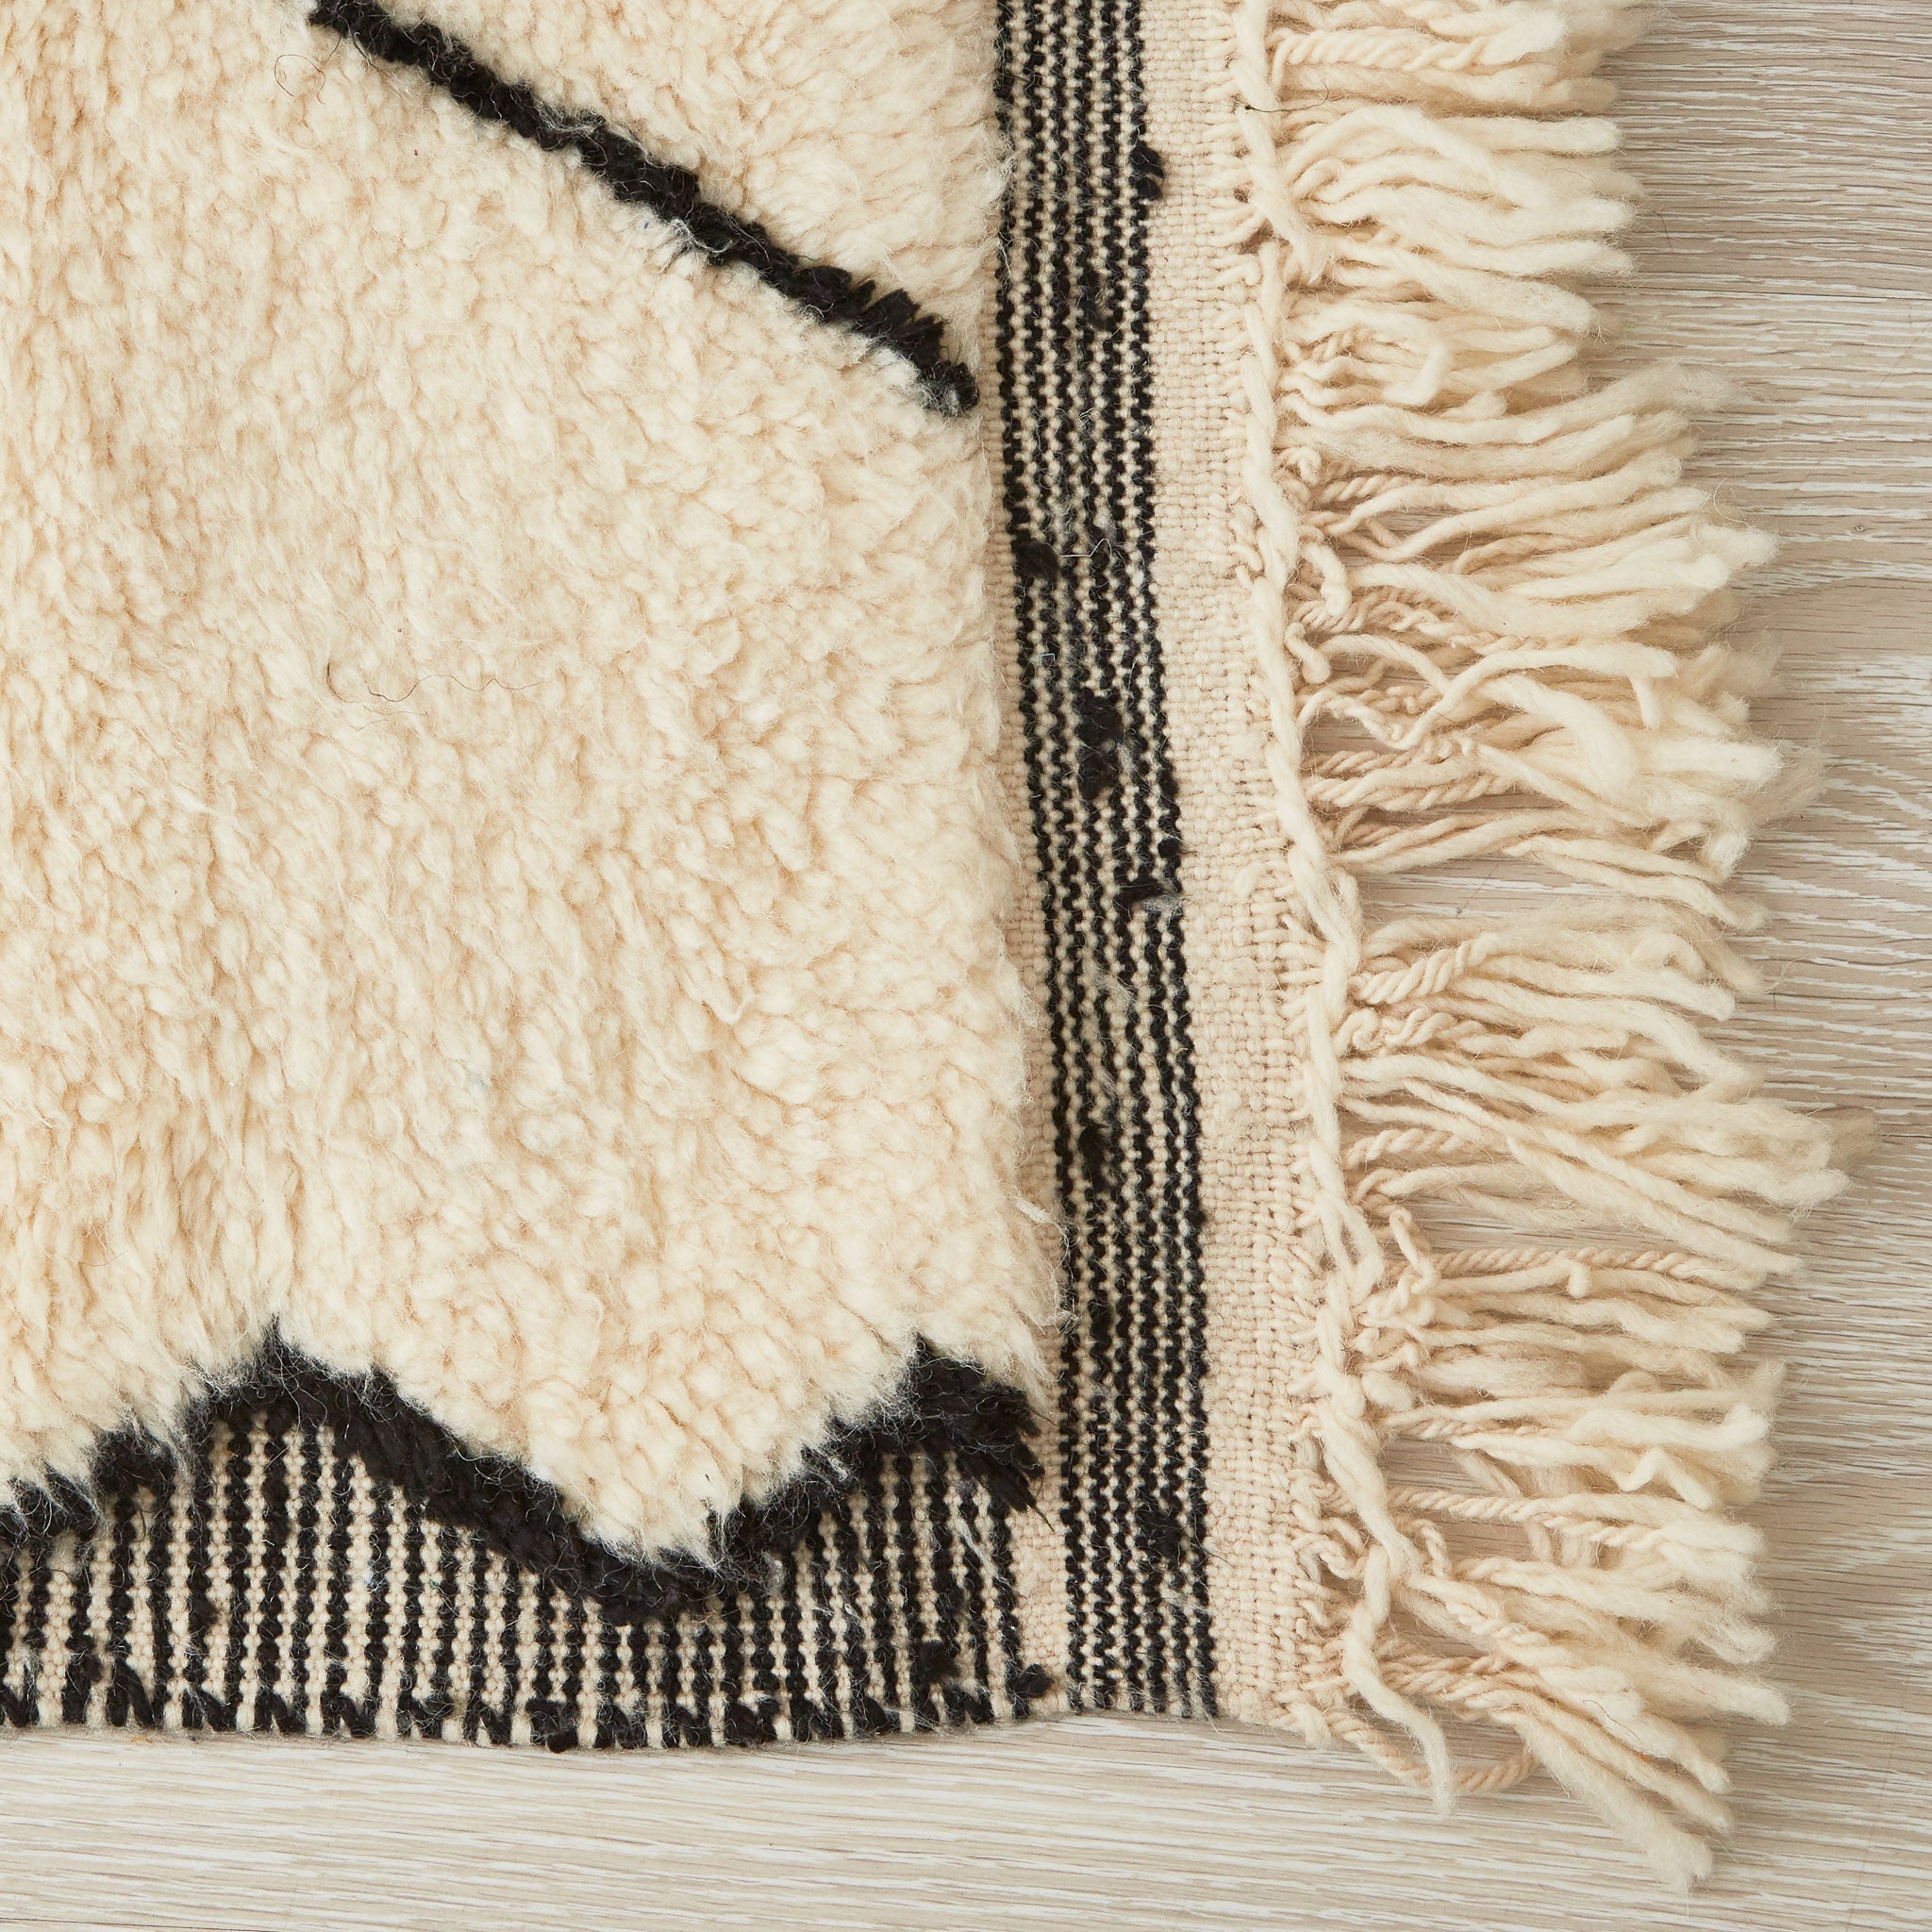 tappeto beni ourain in tinta unita con rombi e bordi neri dettaglio dell'angolo e della frangia